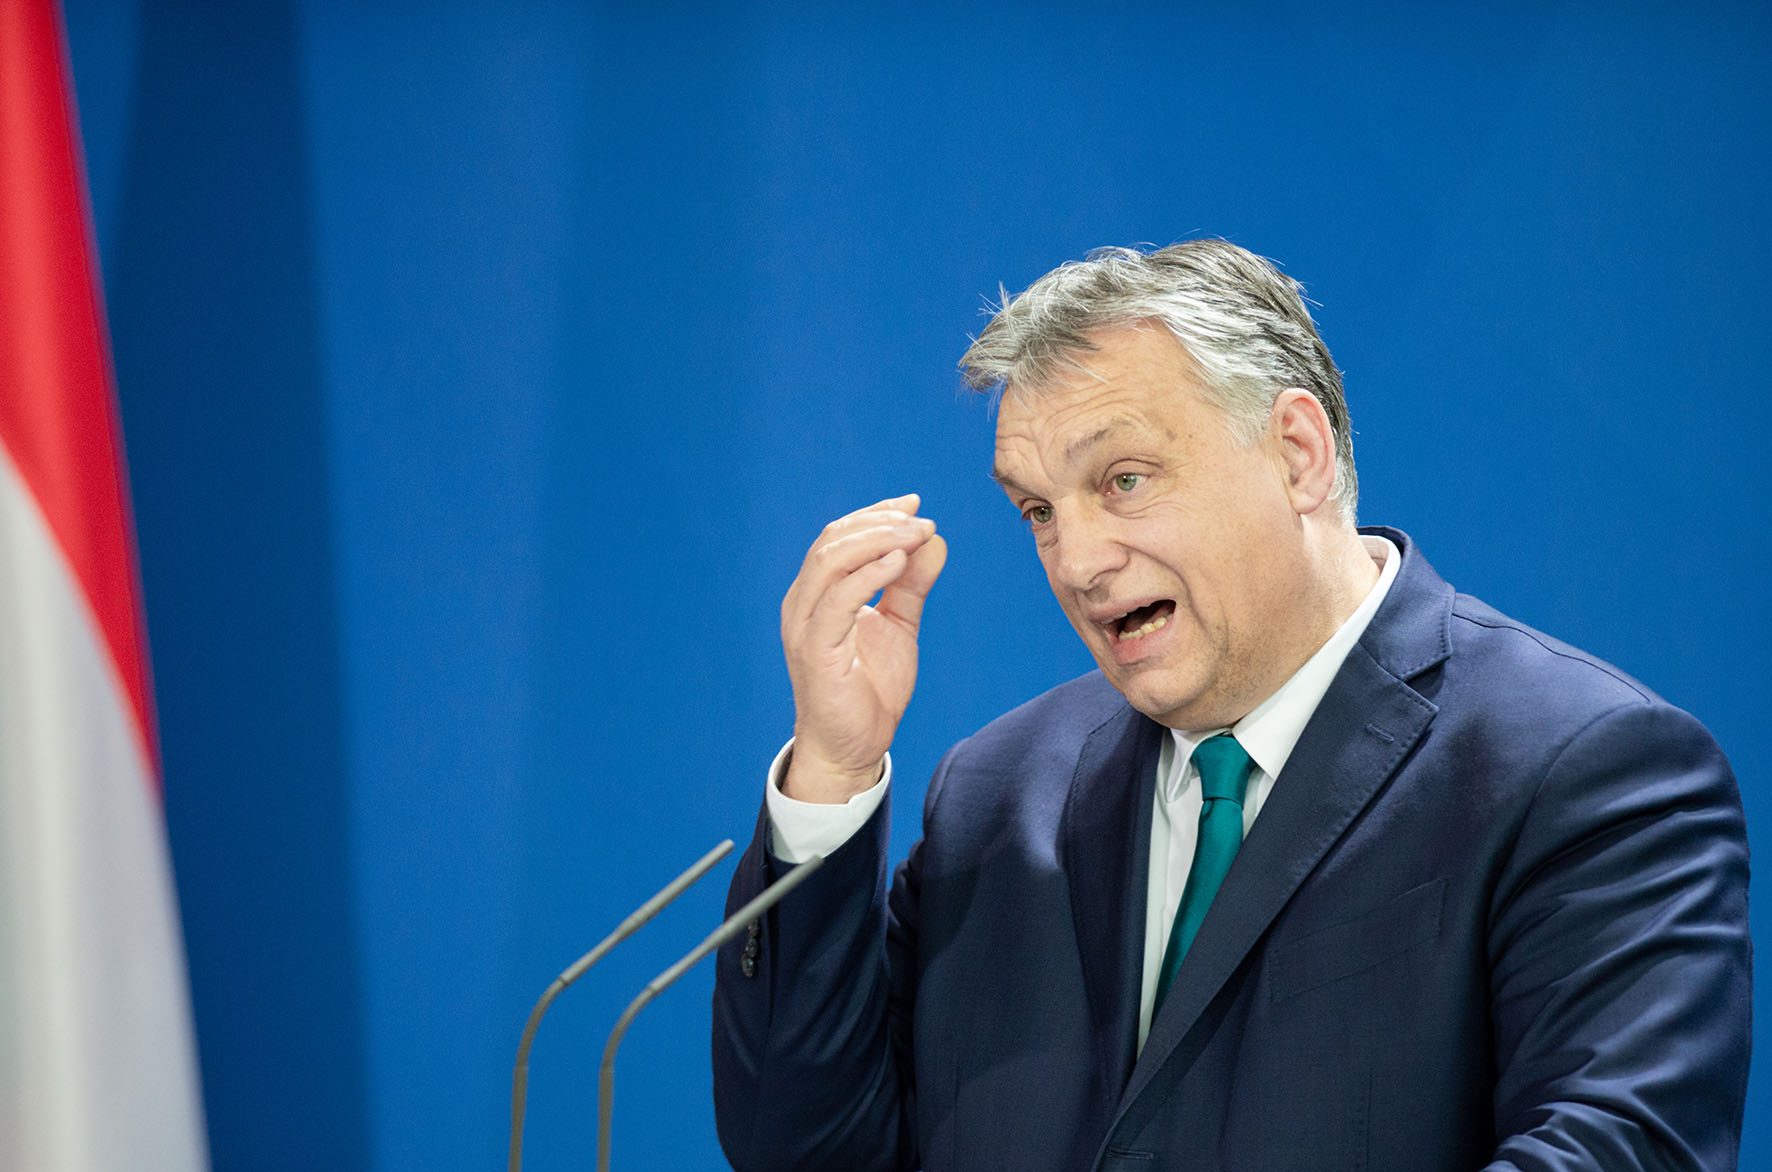 De Hongaarse premier Viktor Orban - Foto Shutterstock